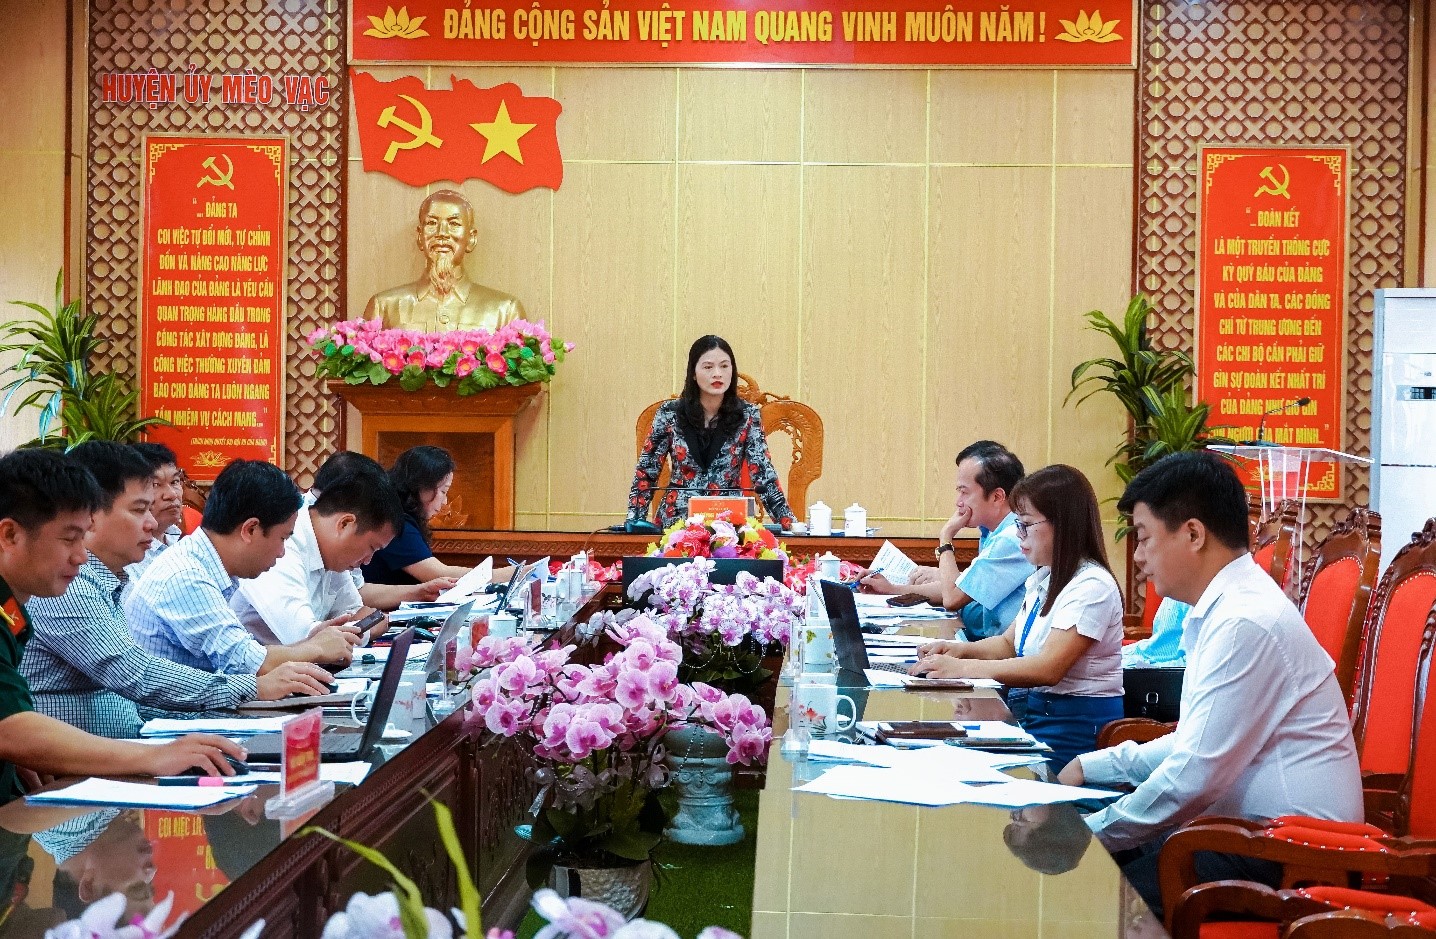 Tổ công tác theo quyết định 575 dự phiên họp tháng 4 của Ban thường vụ Huyện ủy Mèo Vạc